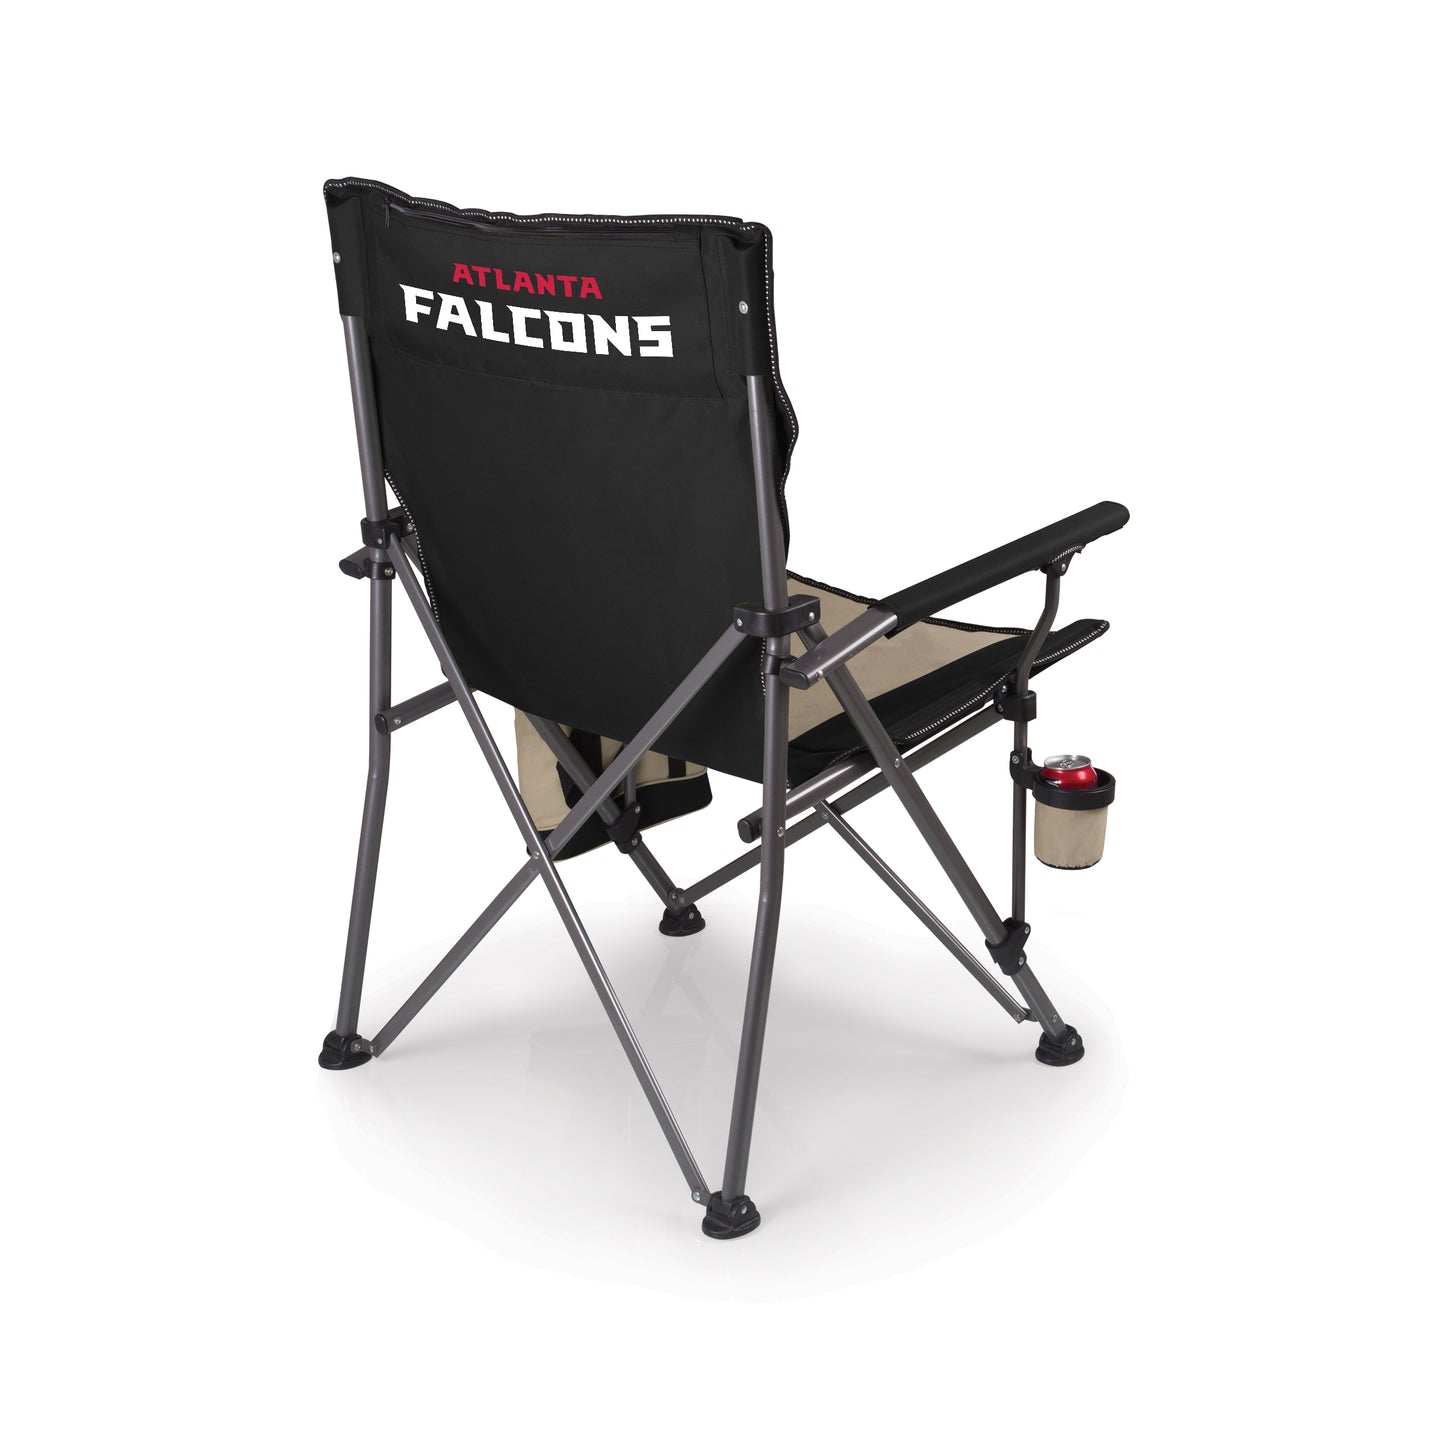 Atlanta Falcons - Big Bear XL Camp Chair with Cooler